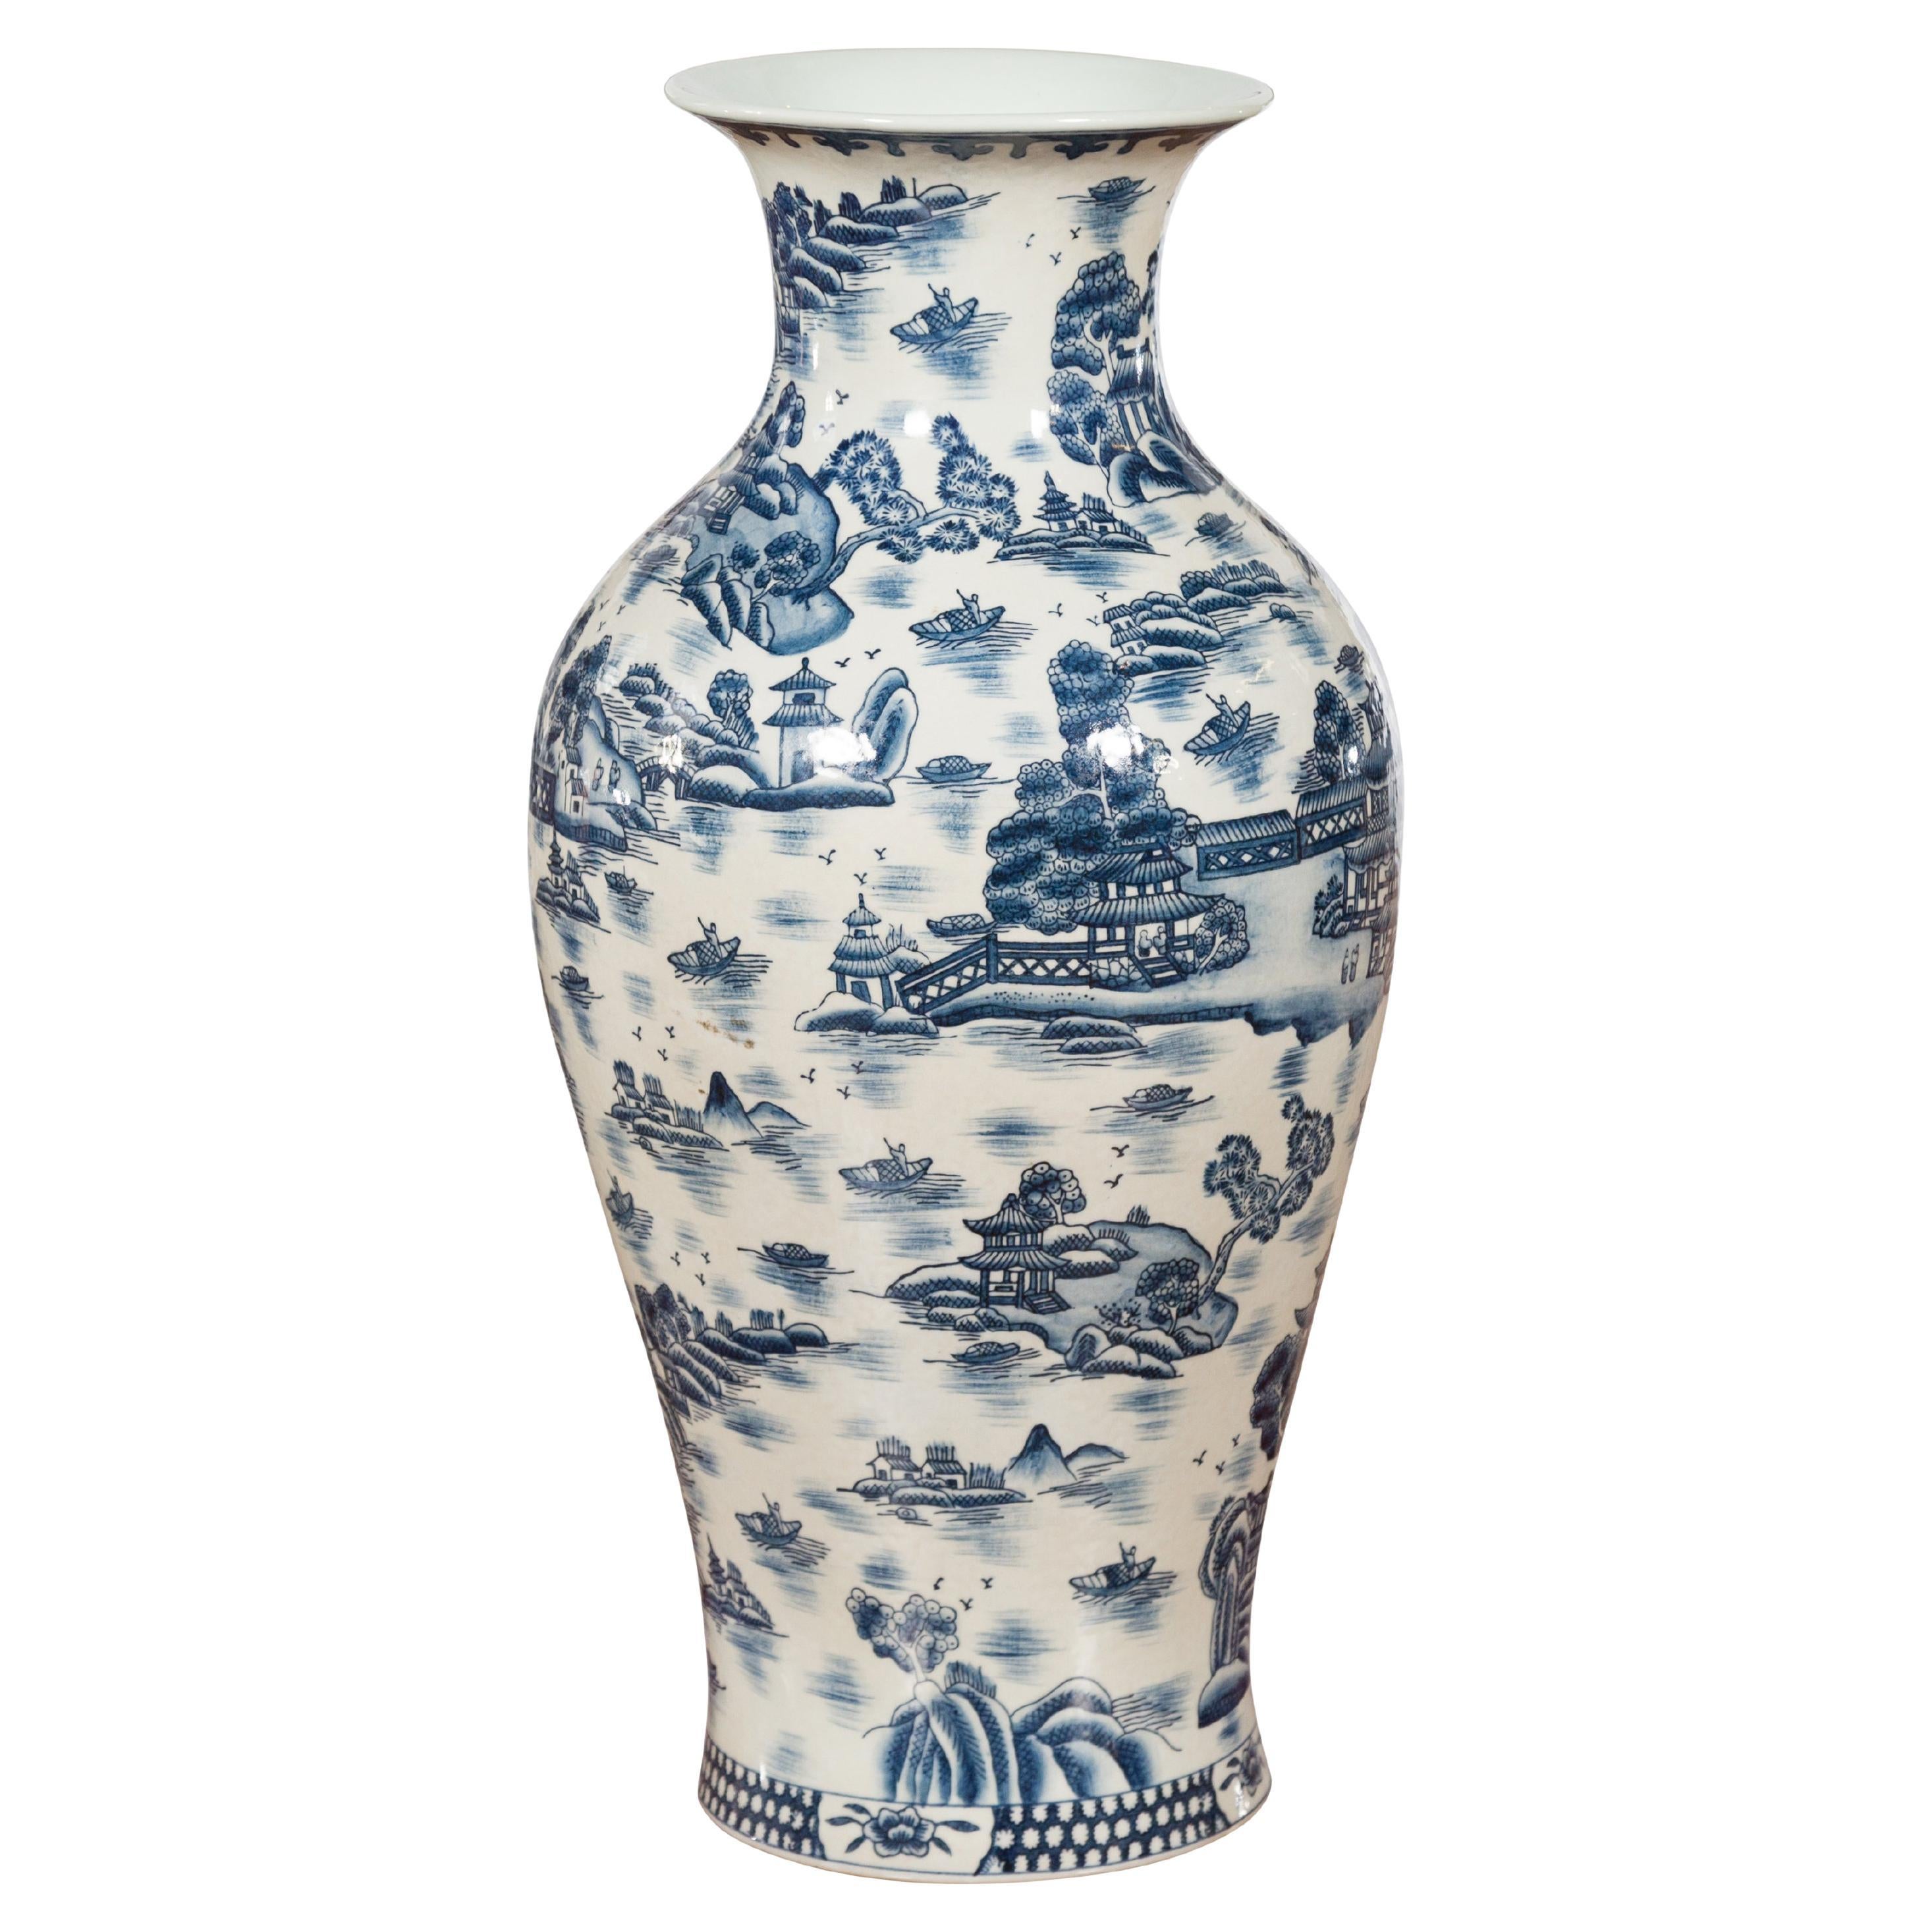 Vase chinois vintage en porcelaine bleue et blanche avec paysages et architectures